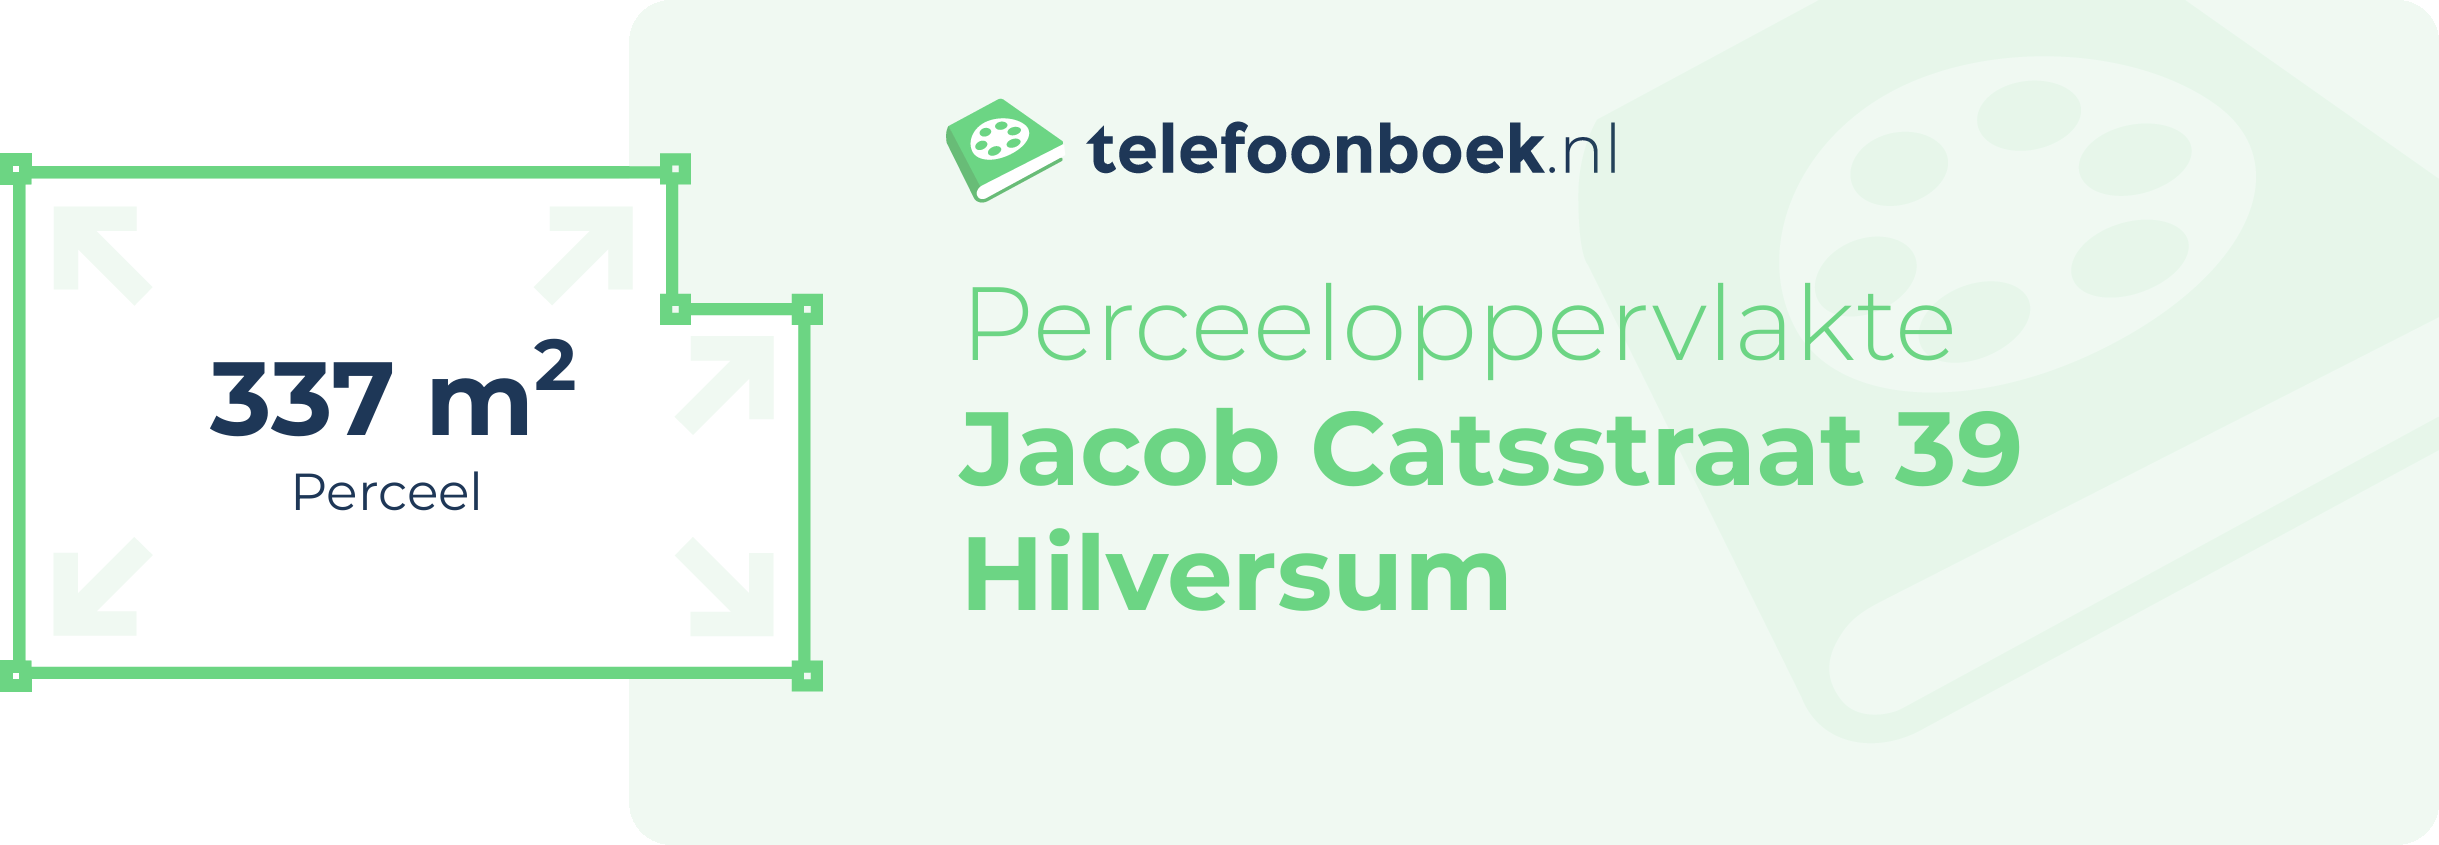 Perceeloppervlakte Jacob Catsstraat 39 Hilversum